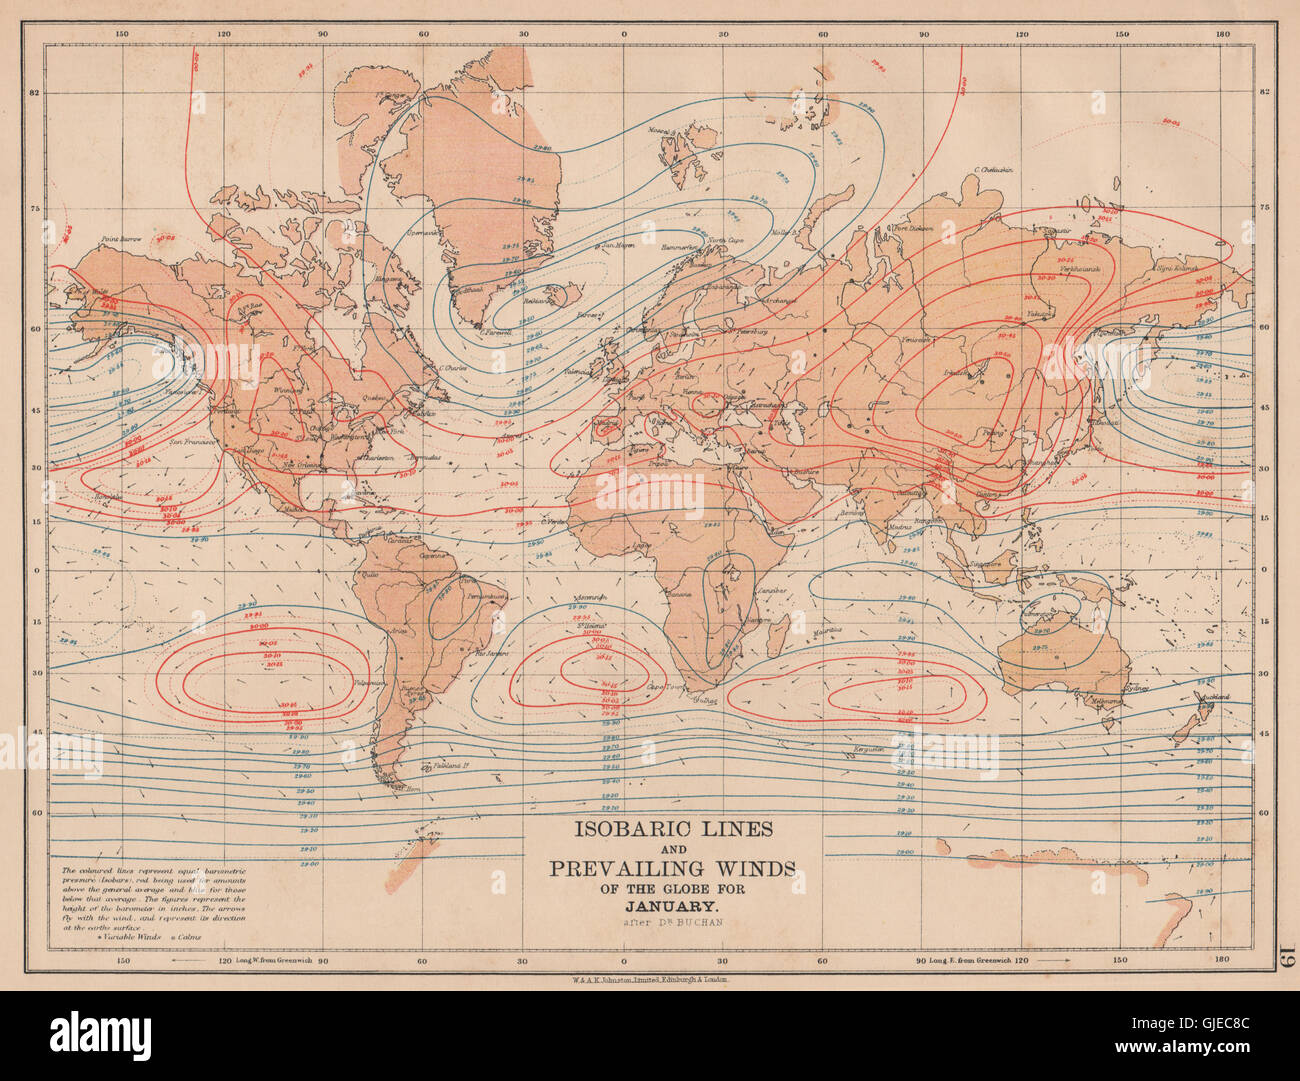 WELT. Isobaren Linien & vorherrschenden Winde des Globe.January.JOHNSTON, 1906-Karte Stockfoto